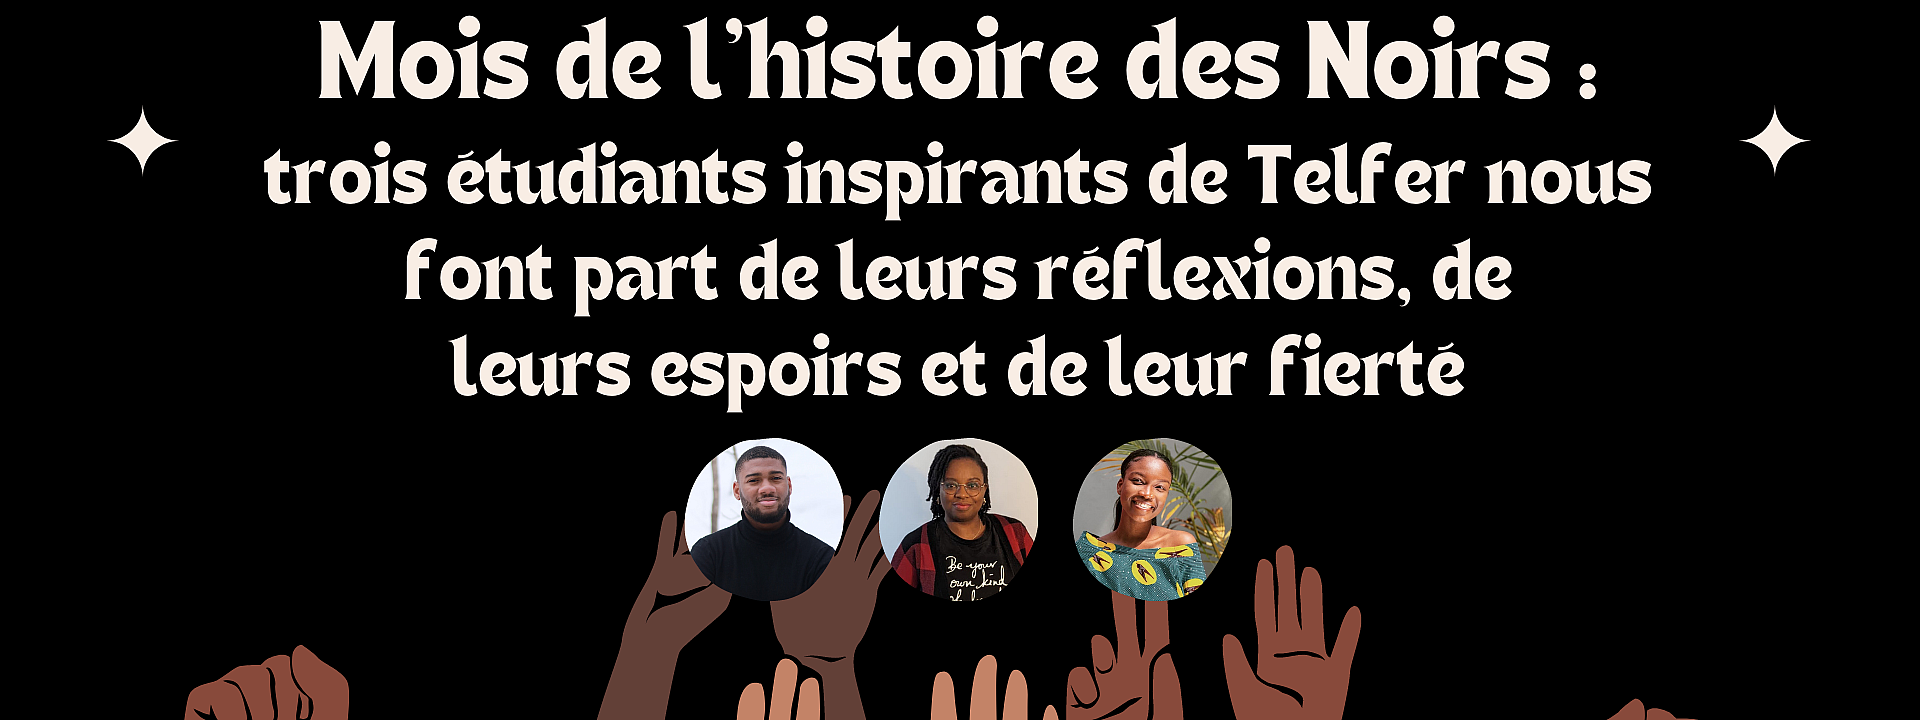 mois-de-l-histoire-des-noirs-trois-etudiants-inspirants